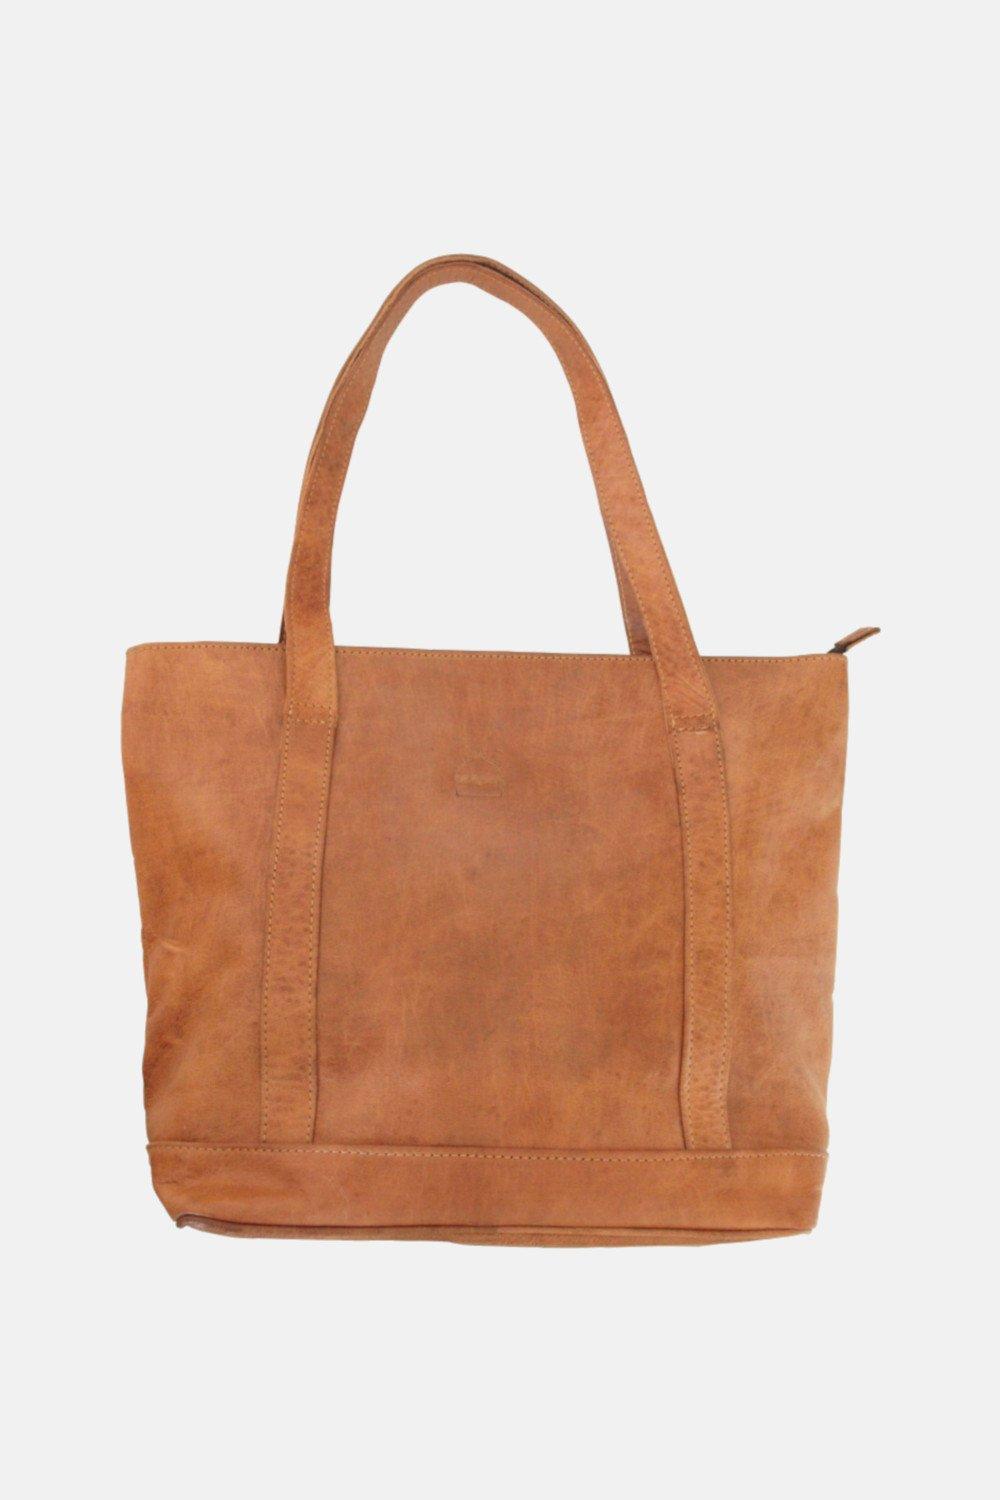 Кожаная большая сумка 'The Nador' Berber Leather, коричневый